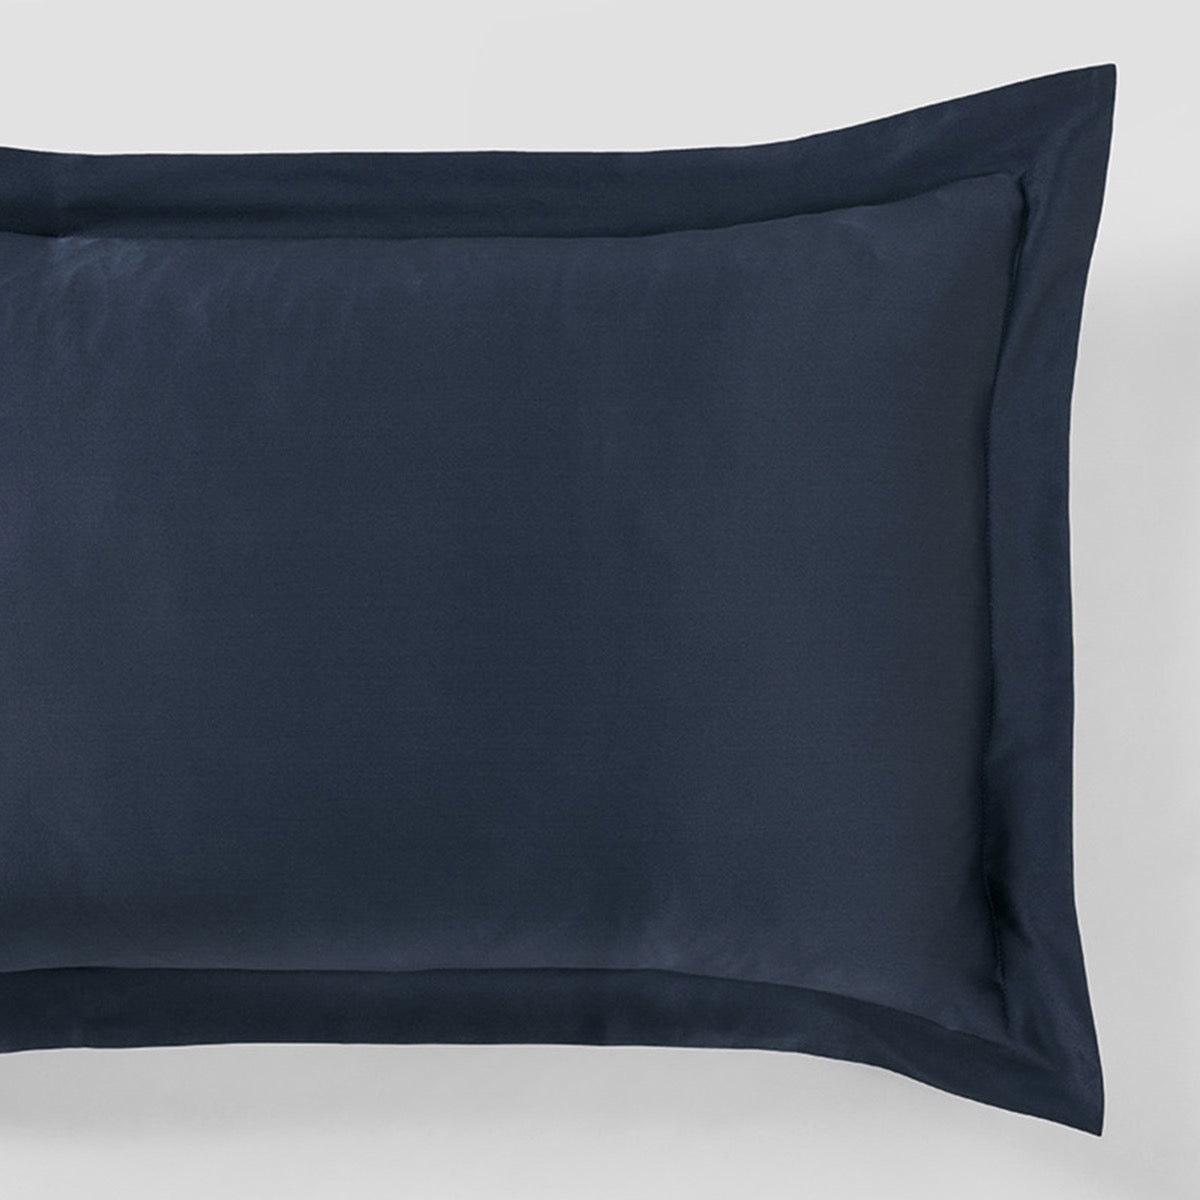 Lanham MIDNIGHT TAILORED Silk Pillowcase by Sheridan